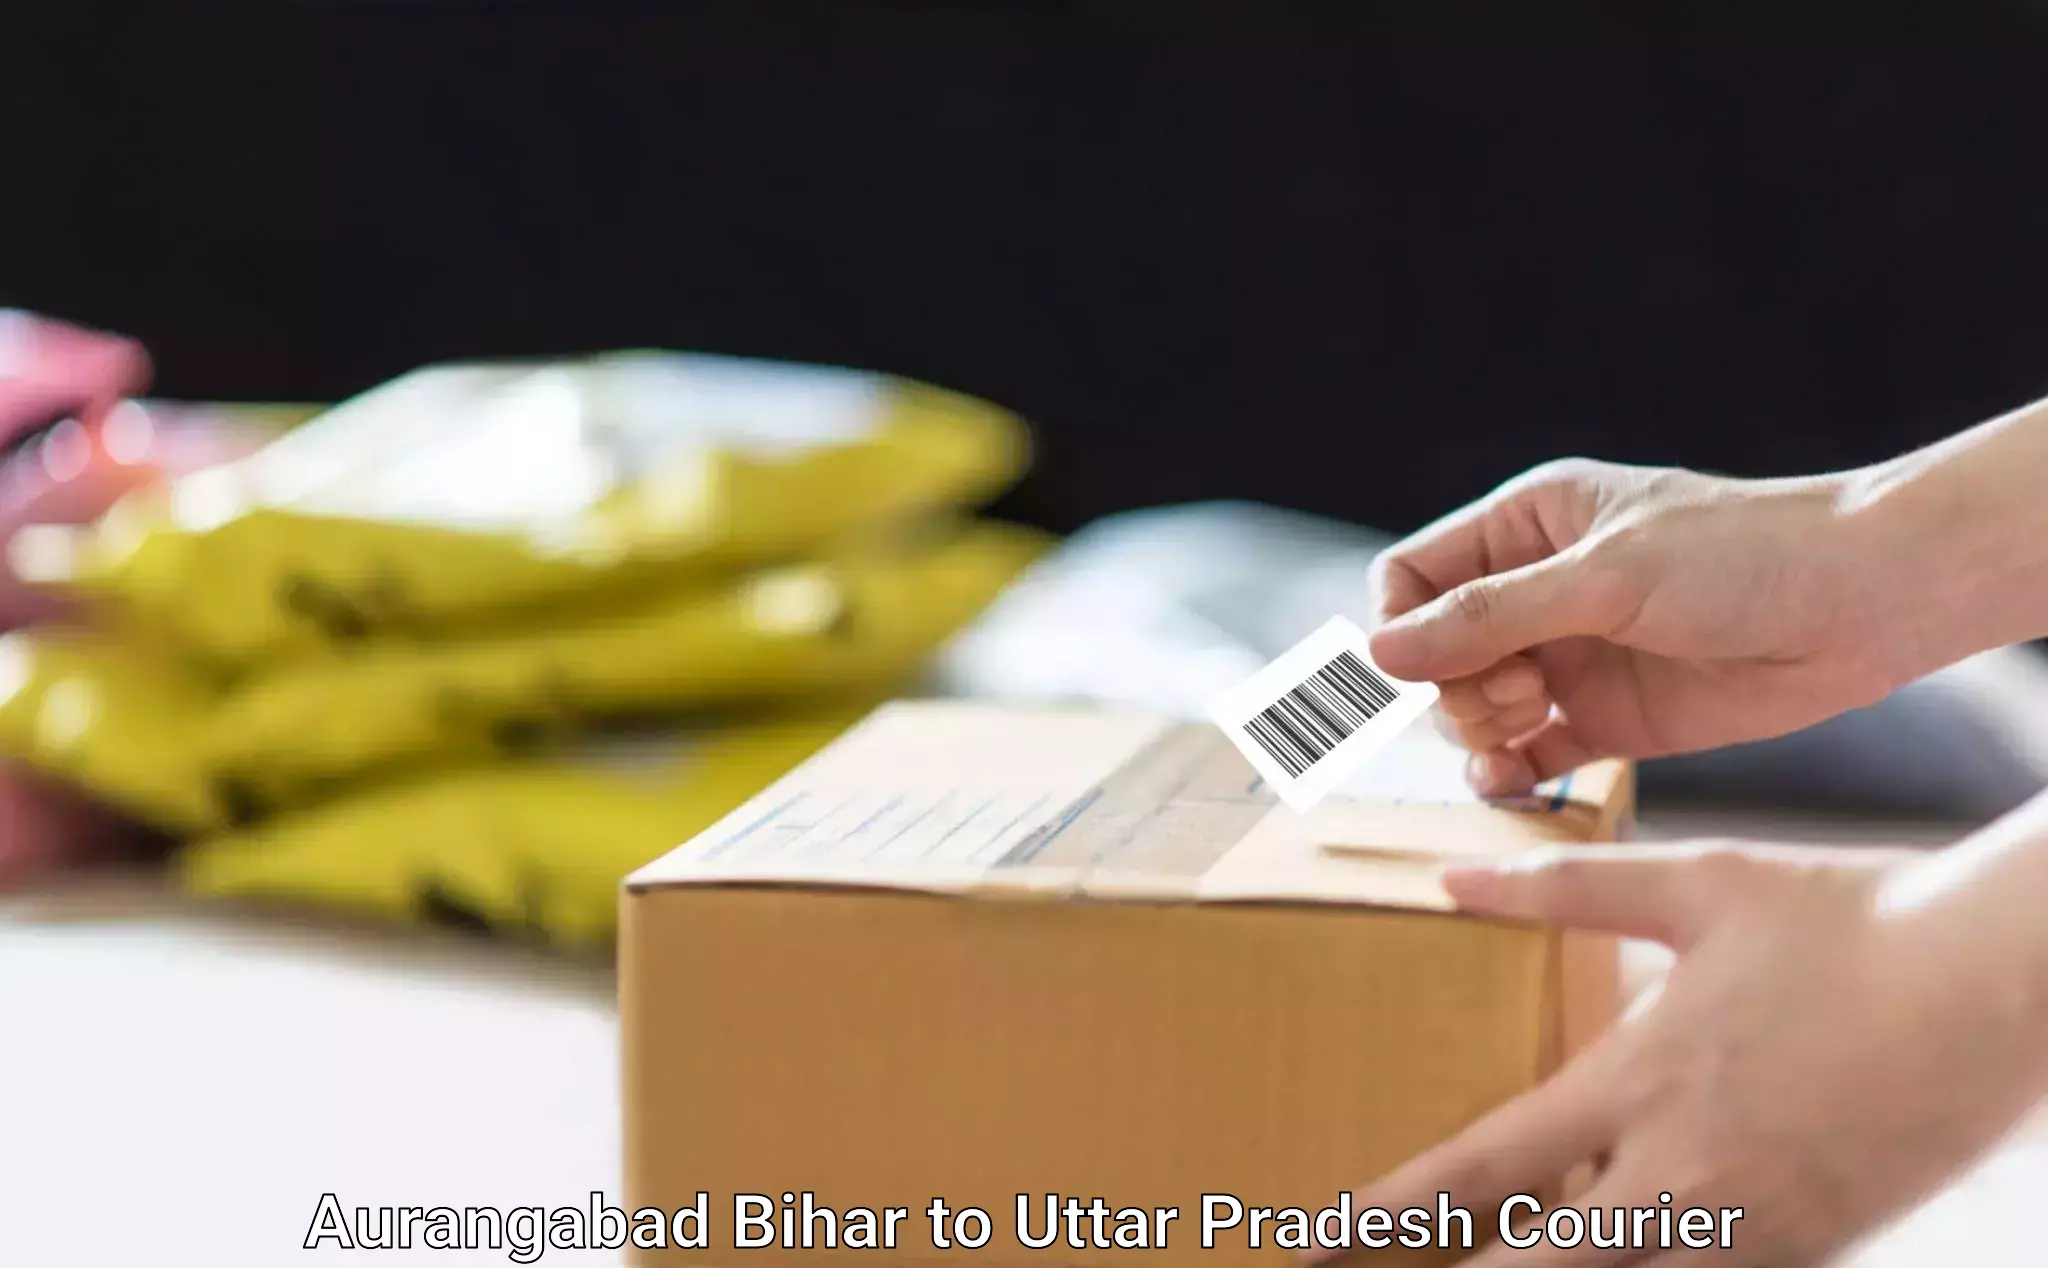 Home goods moving Aurangabad Bihar to Mainpuri